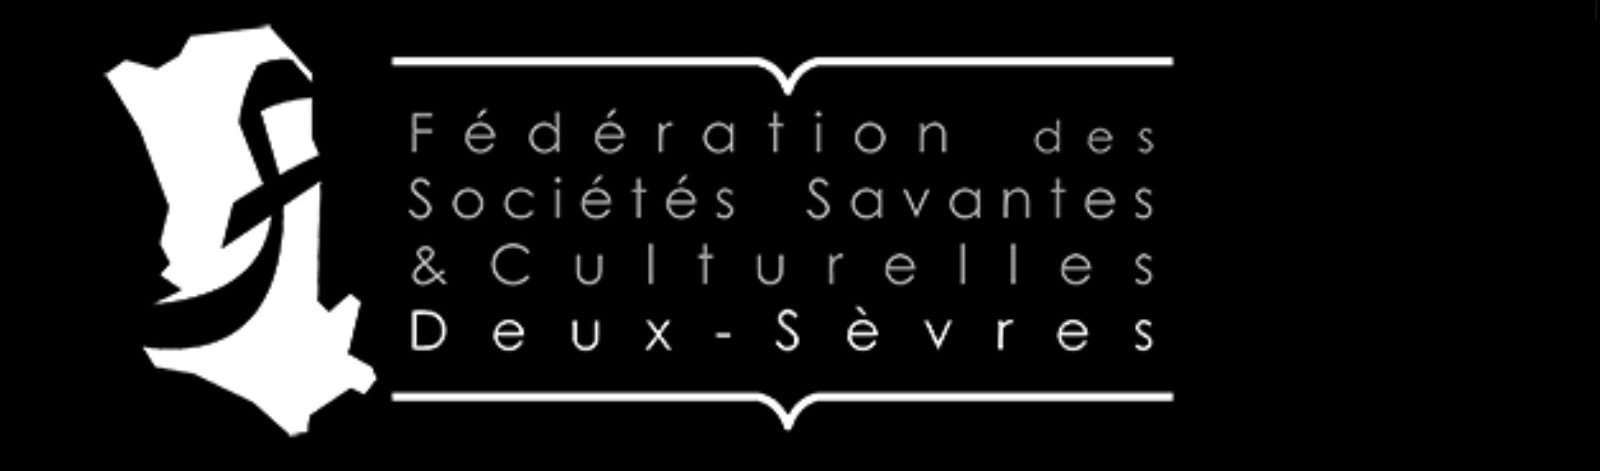 SHSDS : Le logotype de la Fédération